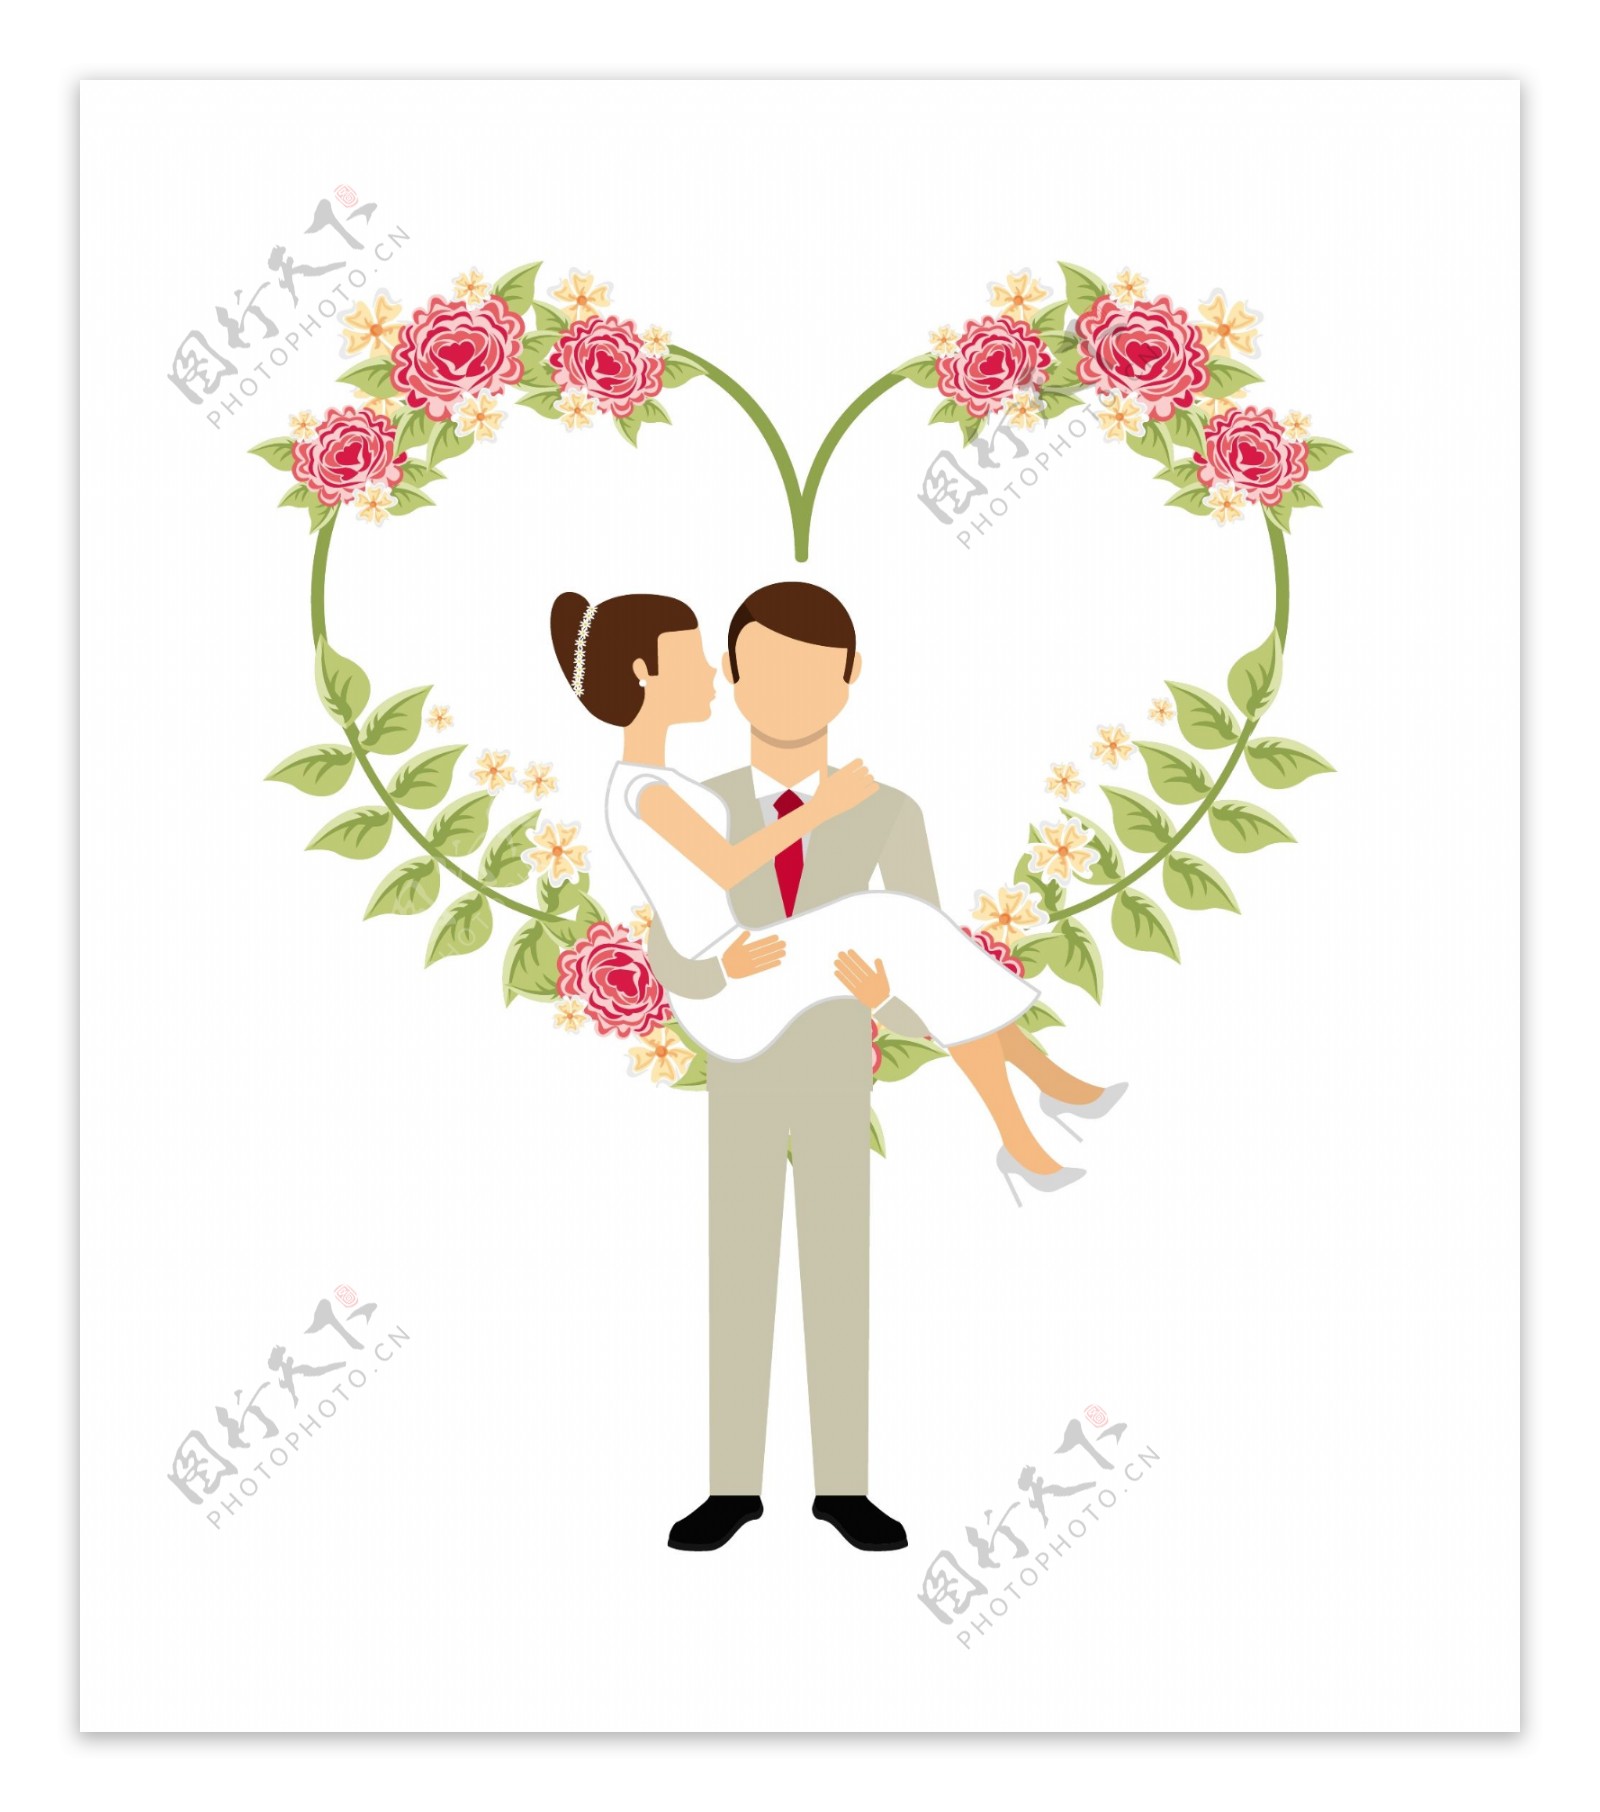 西式婚礼浪漫卡片设计矢量素材模板下载